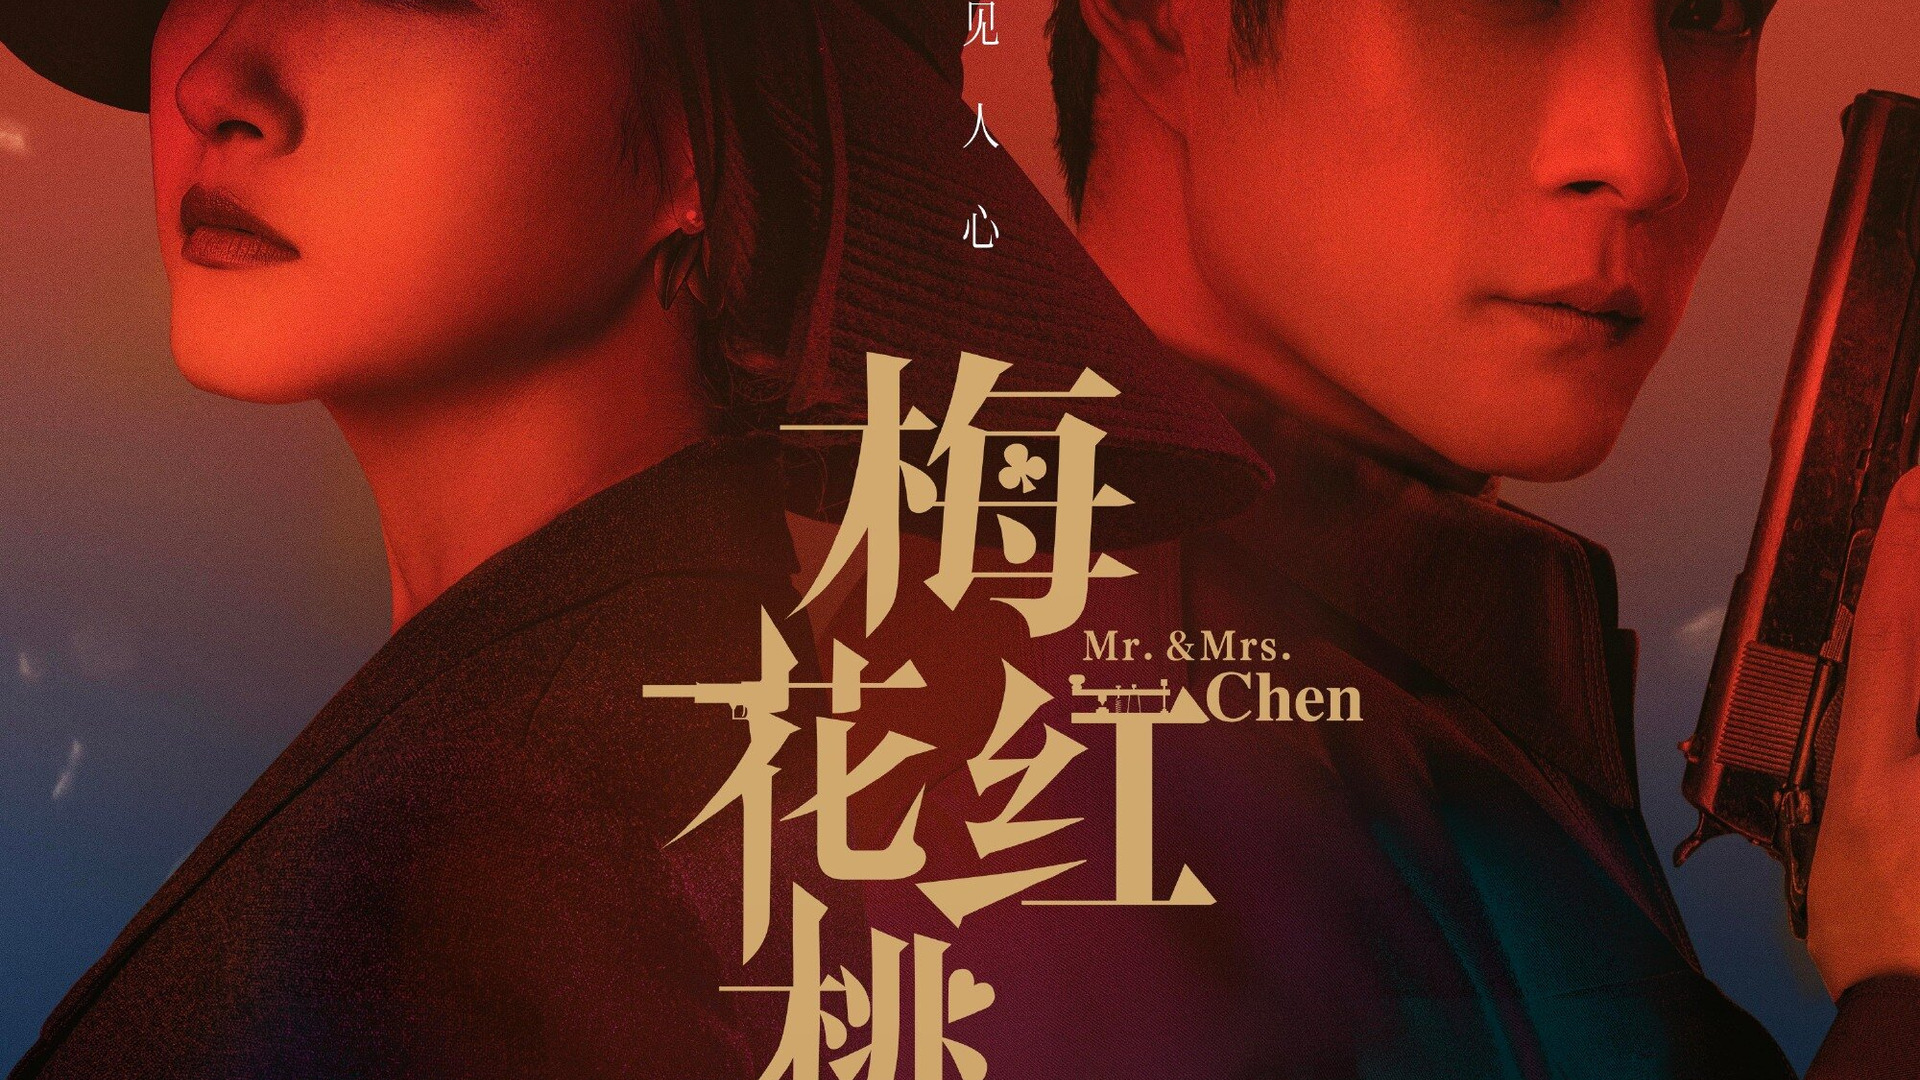 Show Mr. & Mrs. Chen